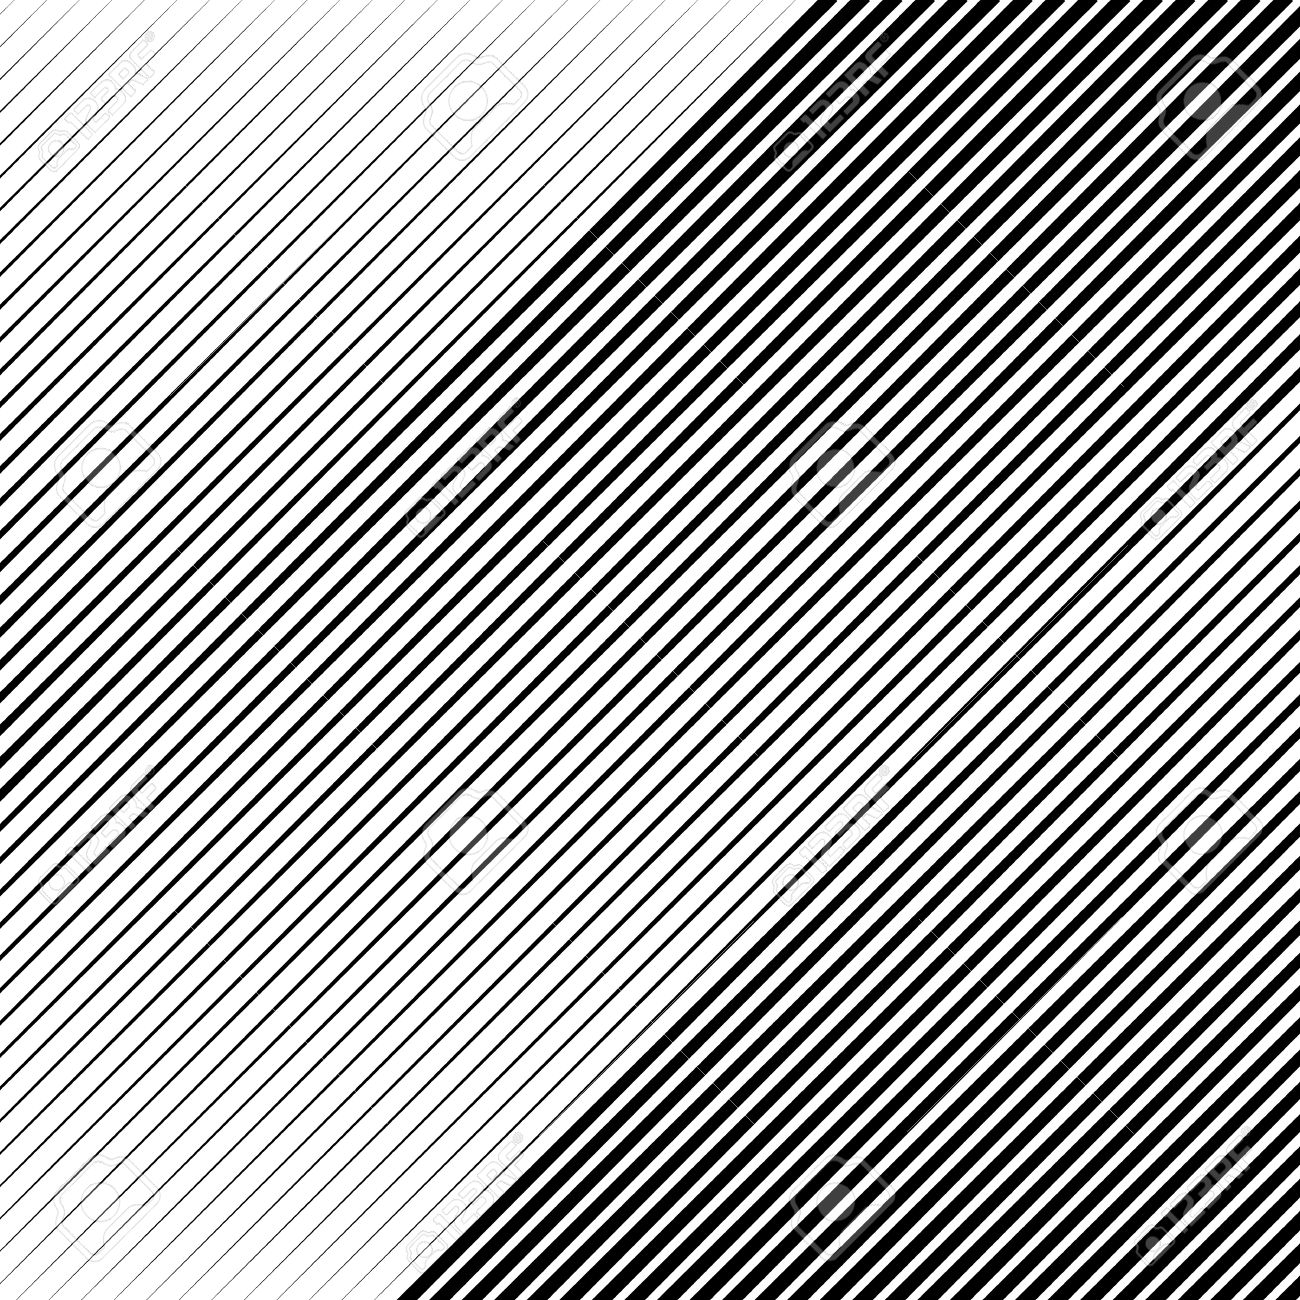 Oblique Diagonal Lines Edgy Pattern Monochrome Background